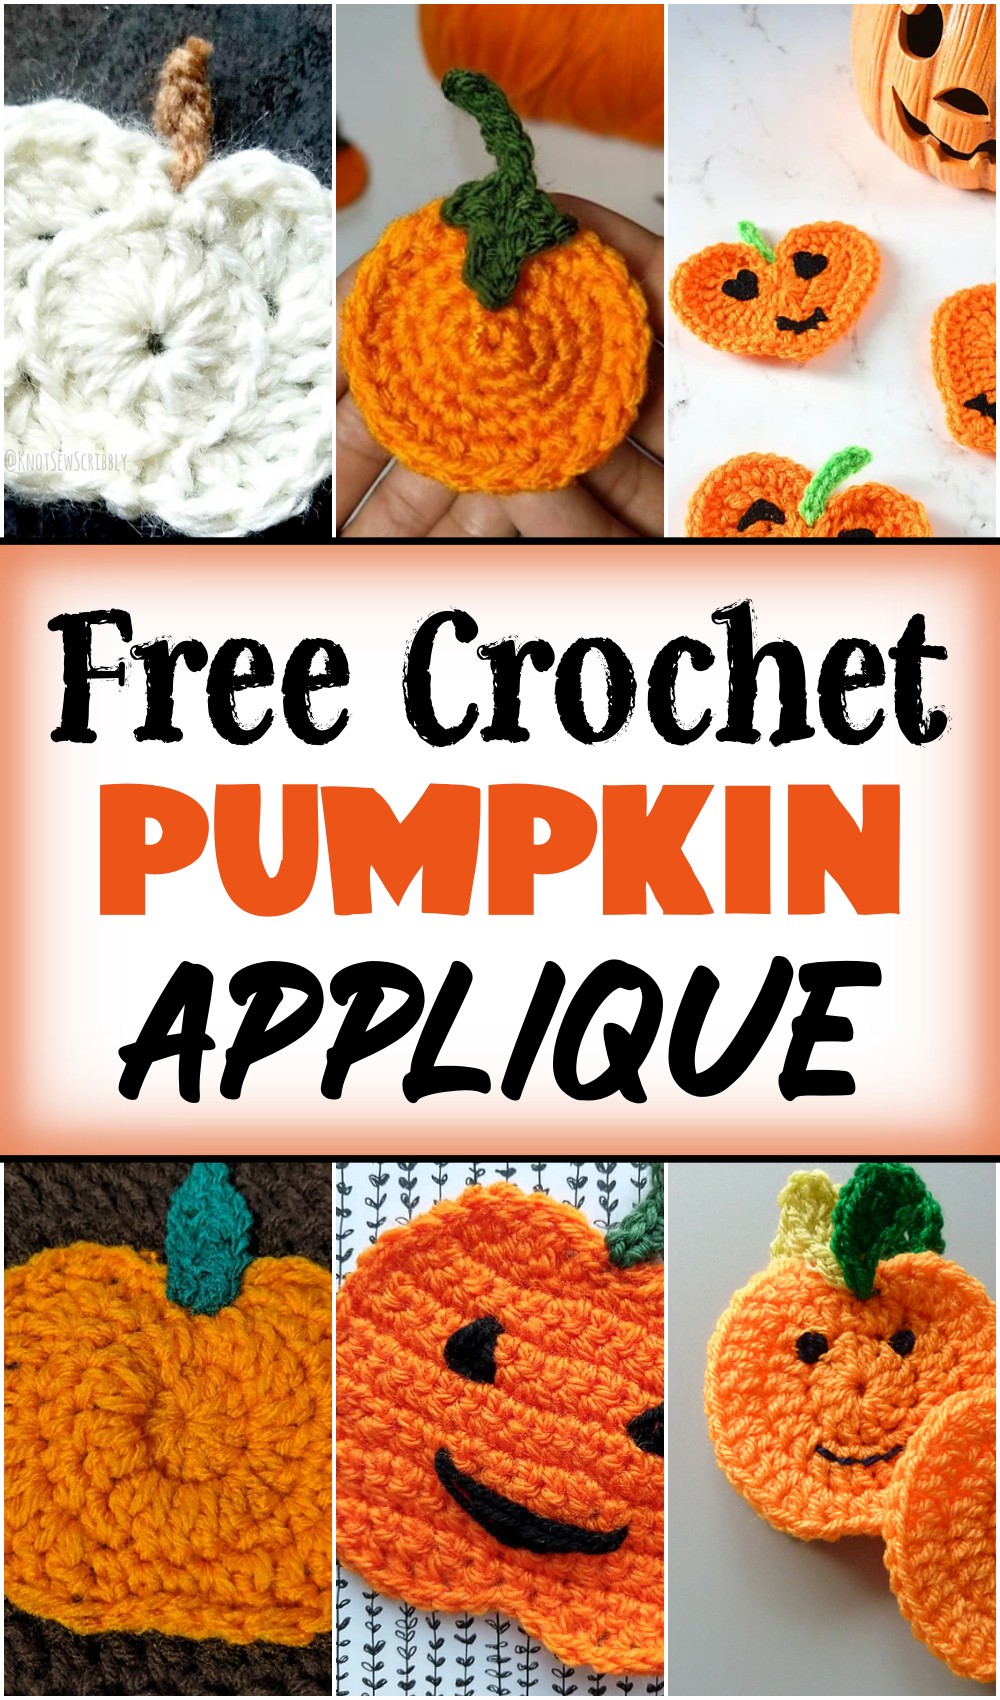 10 Free Crochet Pumpkin Applique Patterns